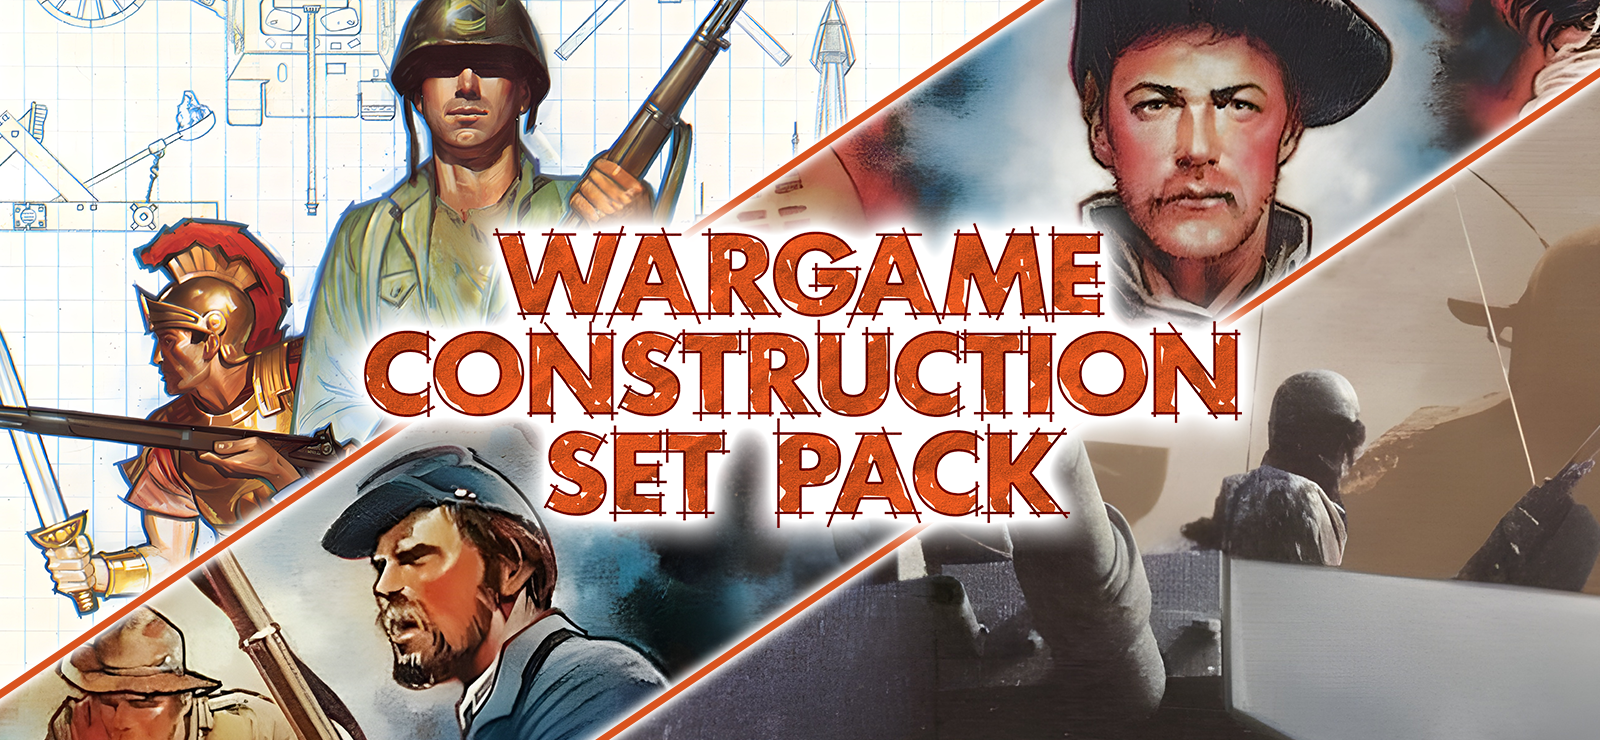 Wargame Construction Set Pack